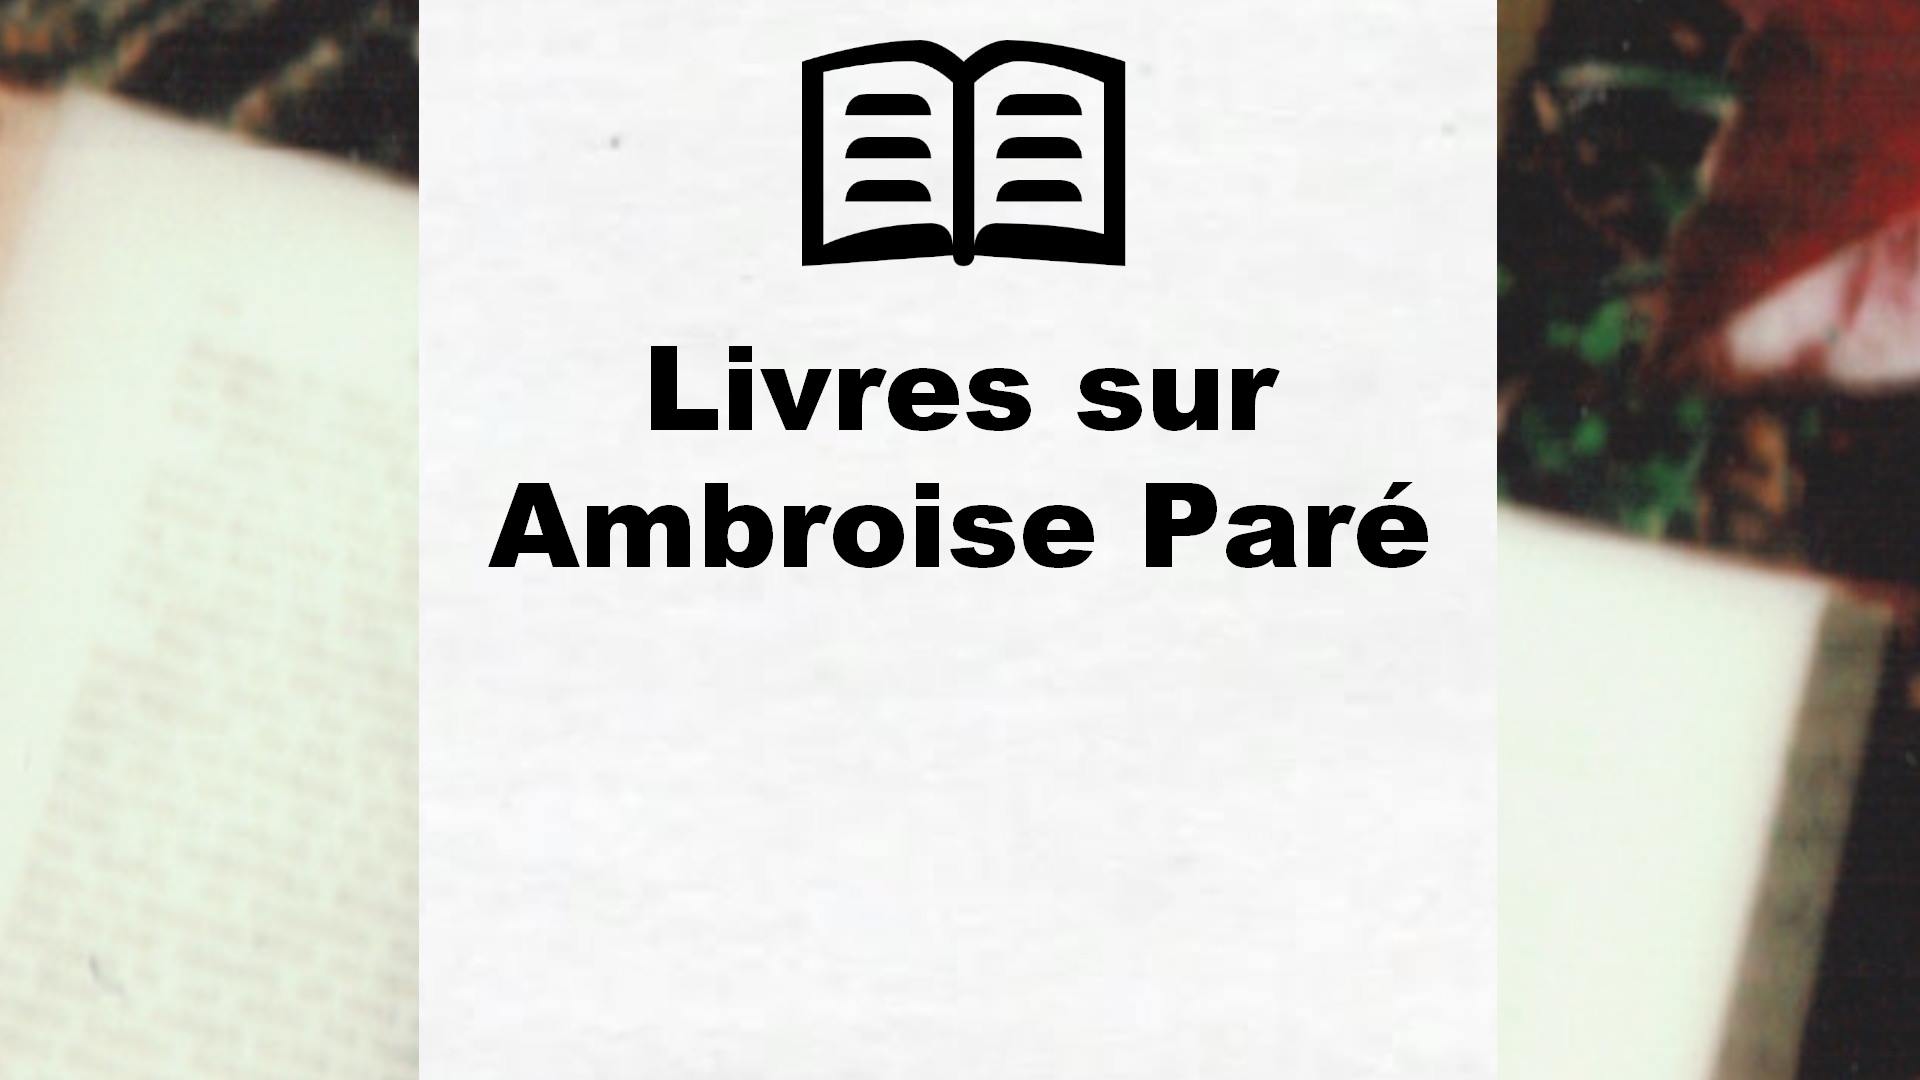 Livres sur Ambroise Paré